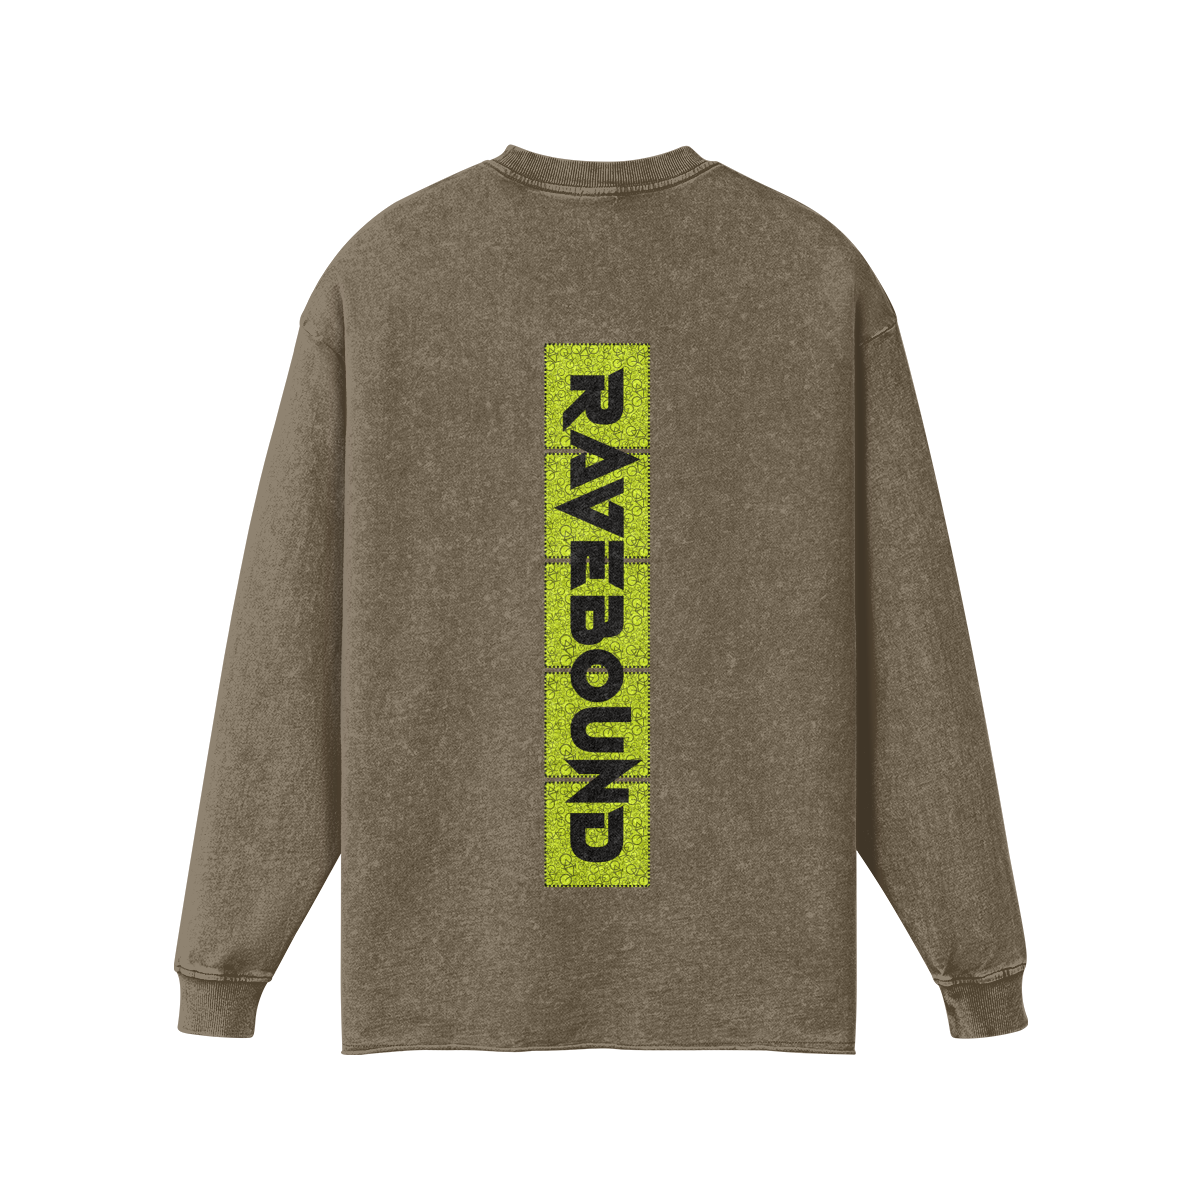 RAVEBOUND (BACK PRINT) - Unisex ! Raw Hem ! Faded Long Sleeve Shirt